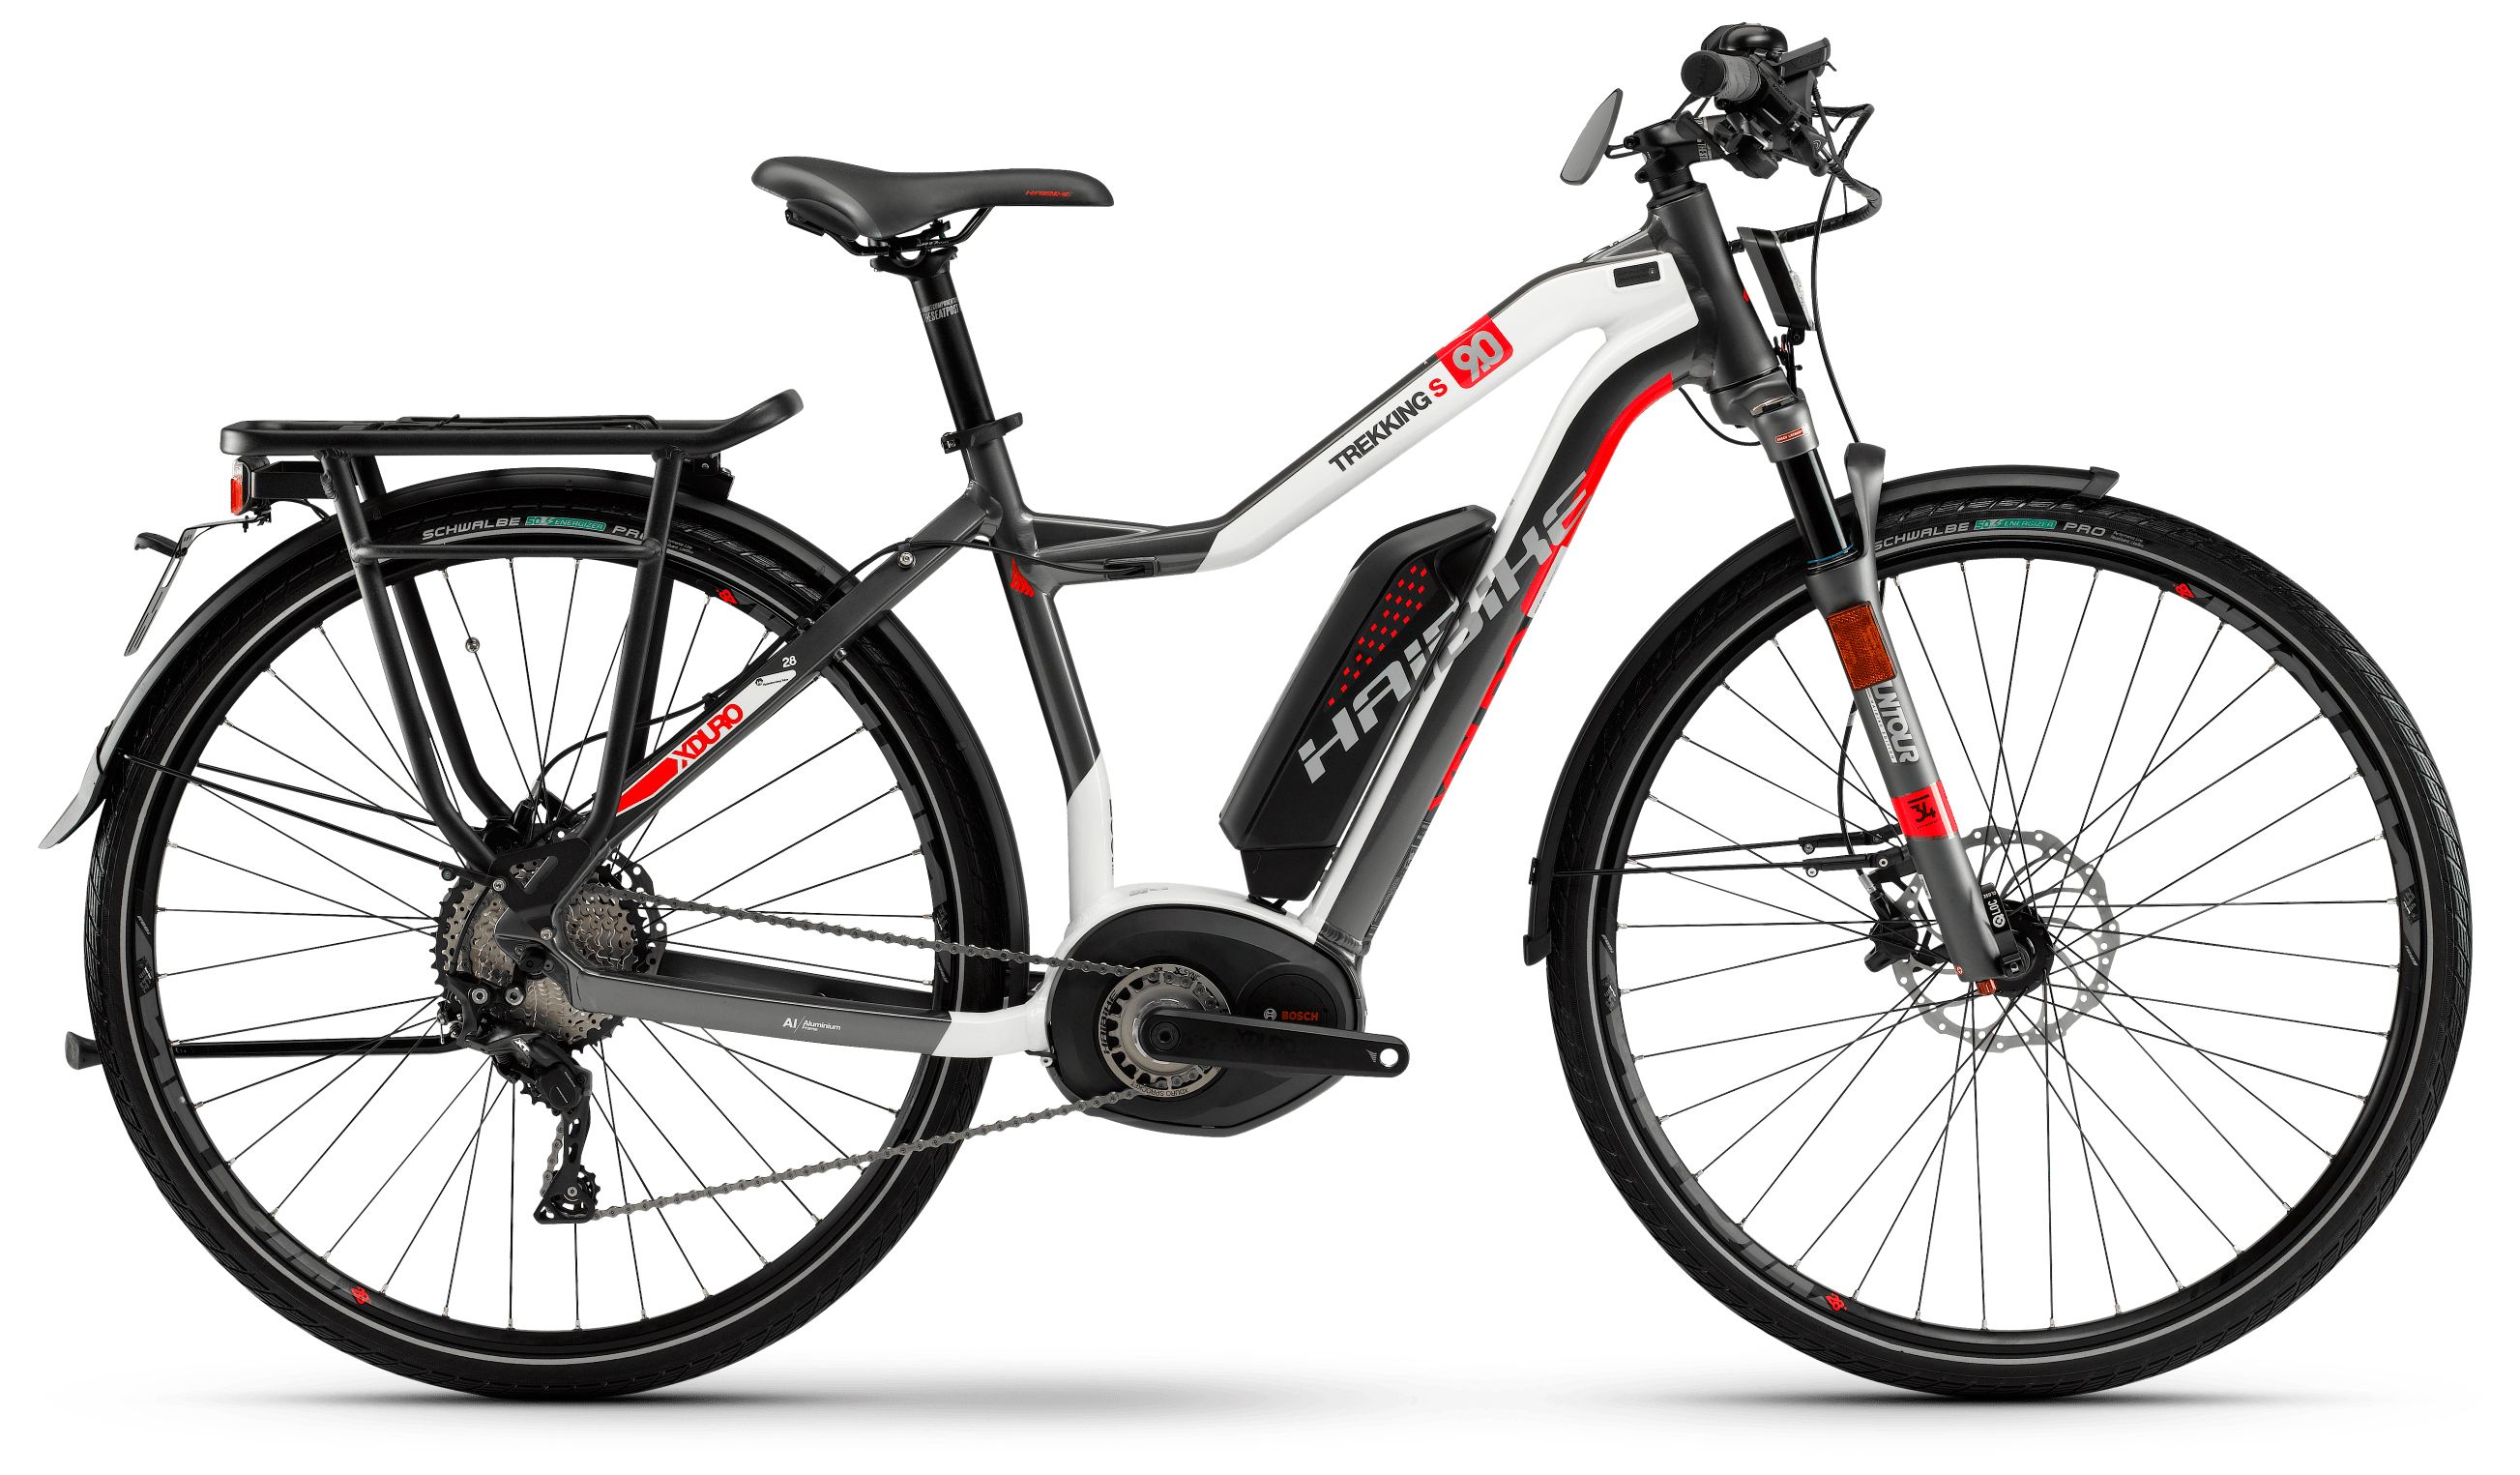  Отзывы о Трехколесный детский велосипед Haibike XDduro Trekking S Da 9.0 500Wh 11s XT 2018